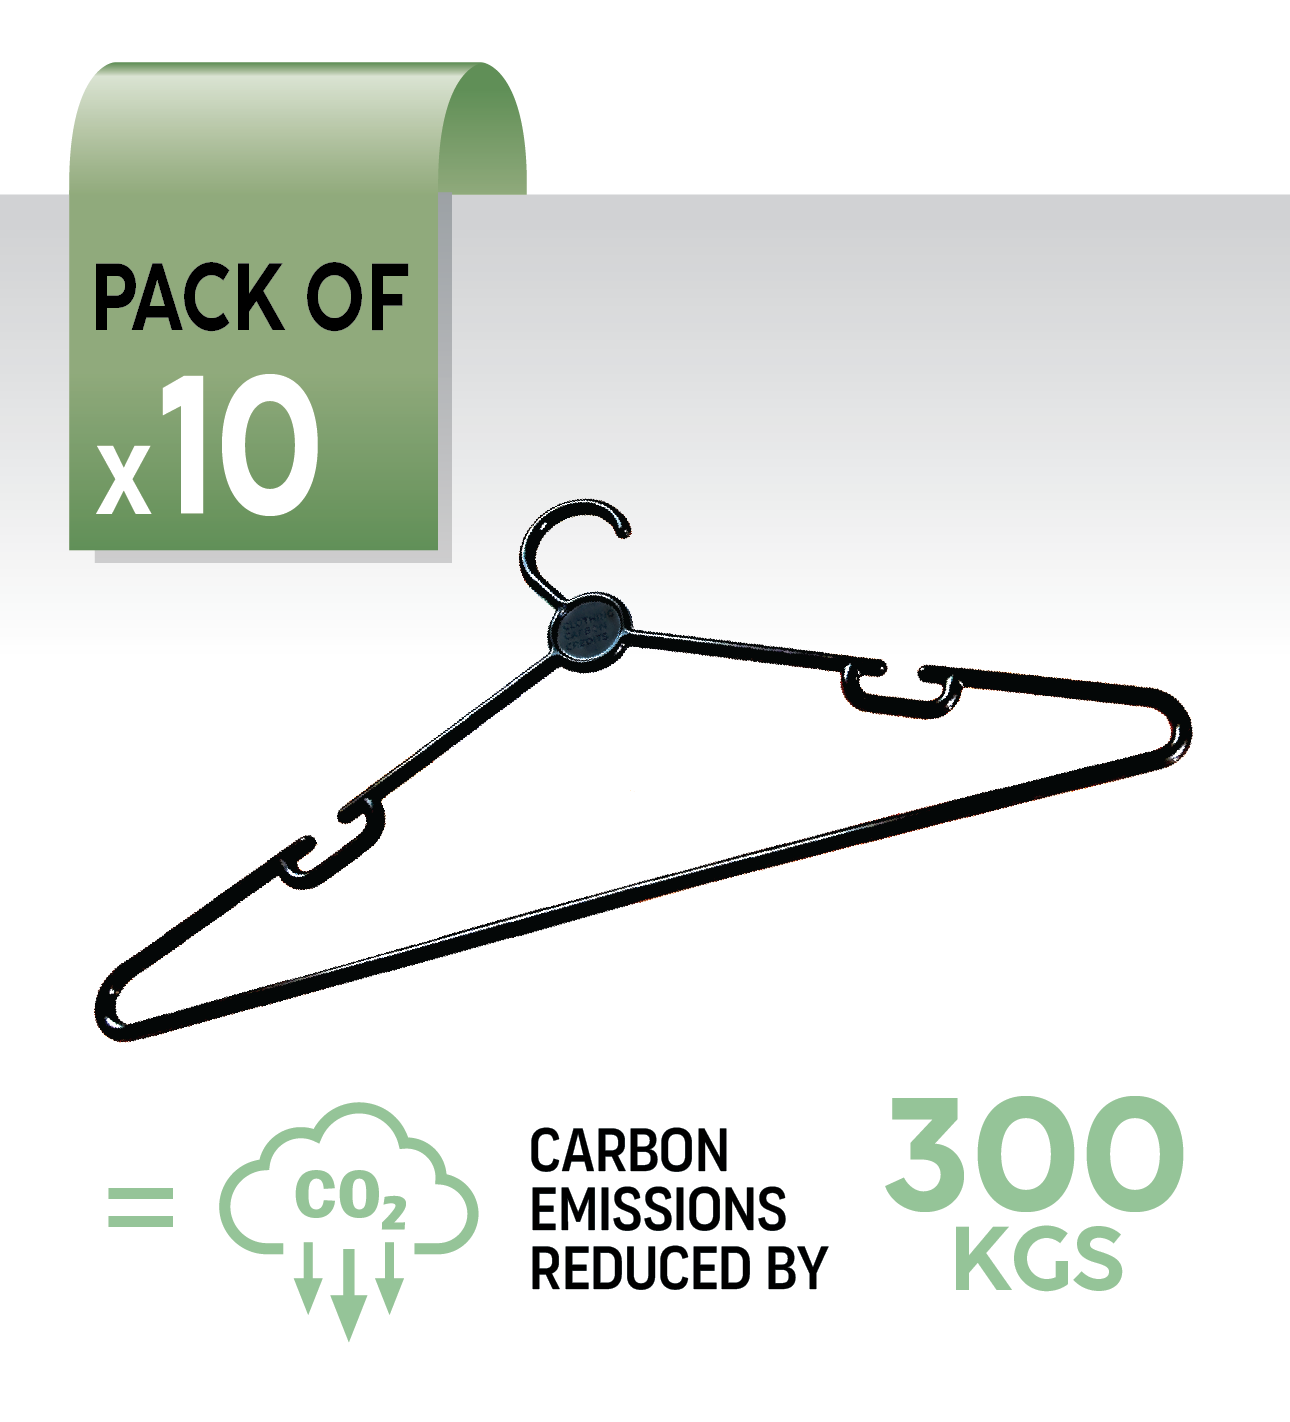 10 hangers - offset 300kg carbon emissions